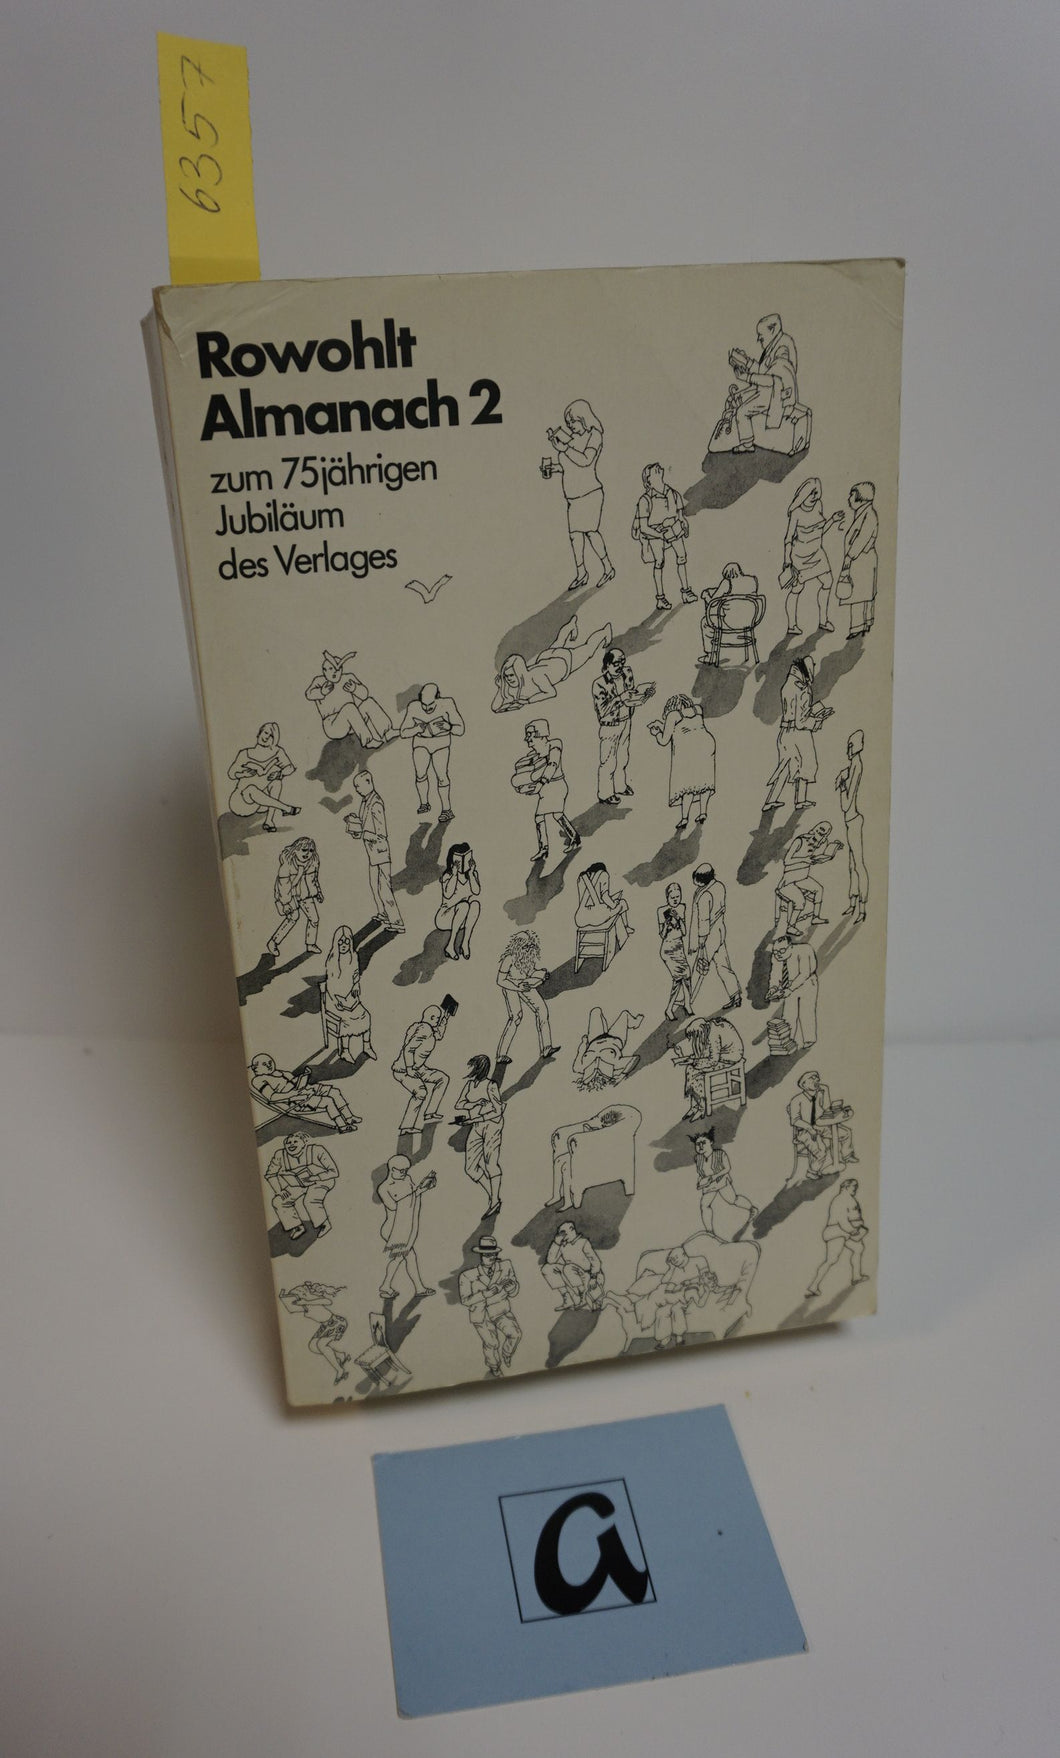 Rowohlt Almanach 2